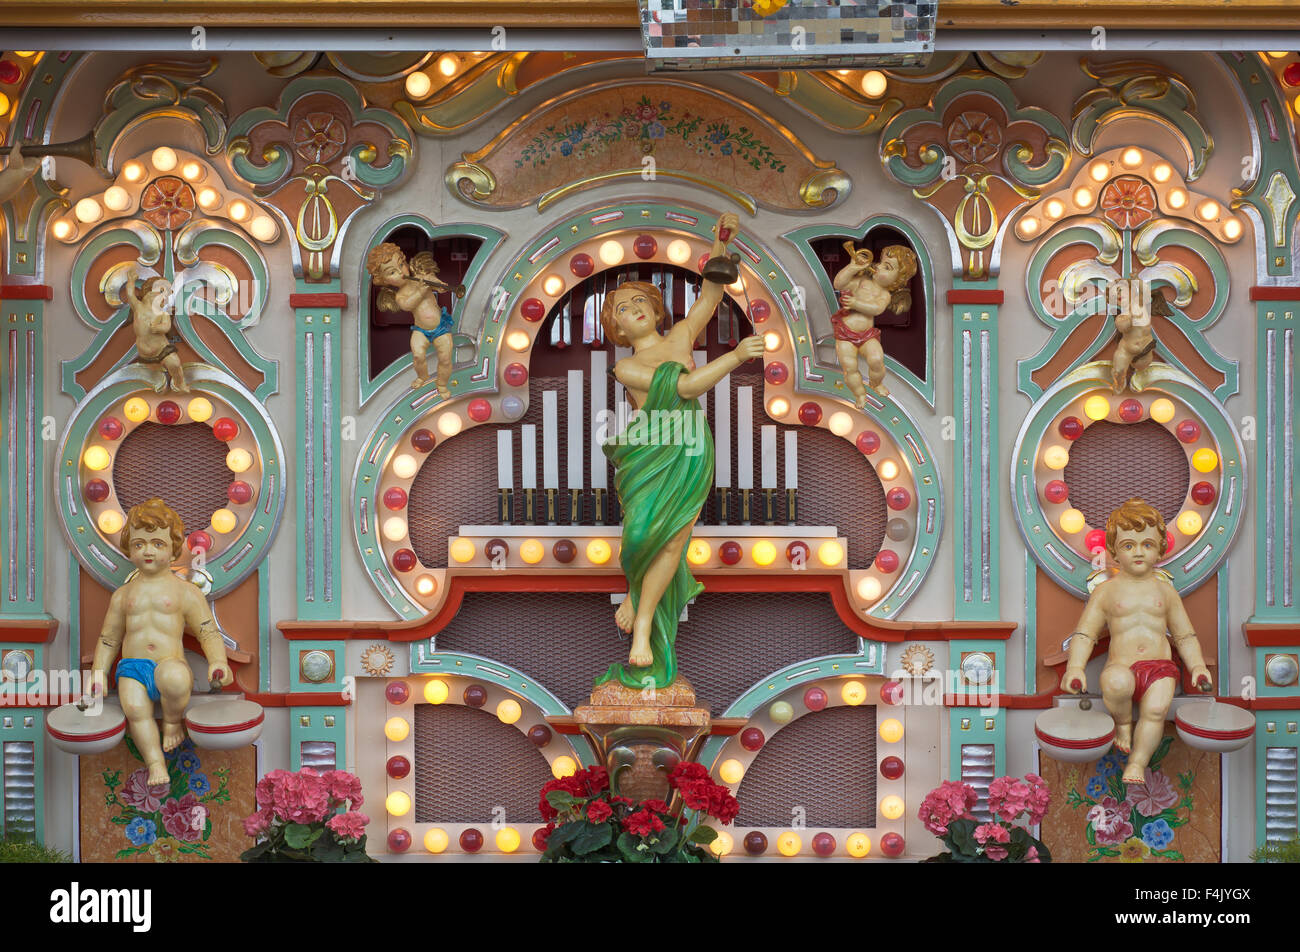 Monaco di Baviera, Germania - sept. 28, 2015: decorato in vecchio stile musica organo presso l'Oktoberfest a Monaco di Baviera in Germania. Foto Stock